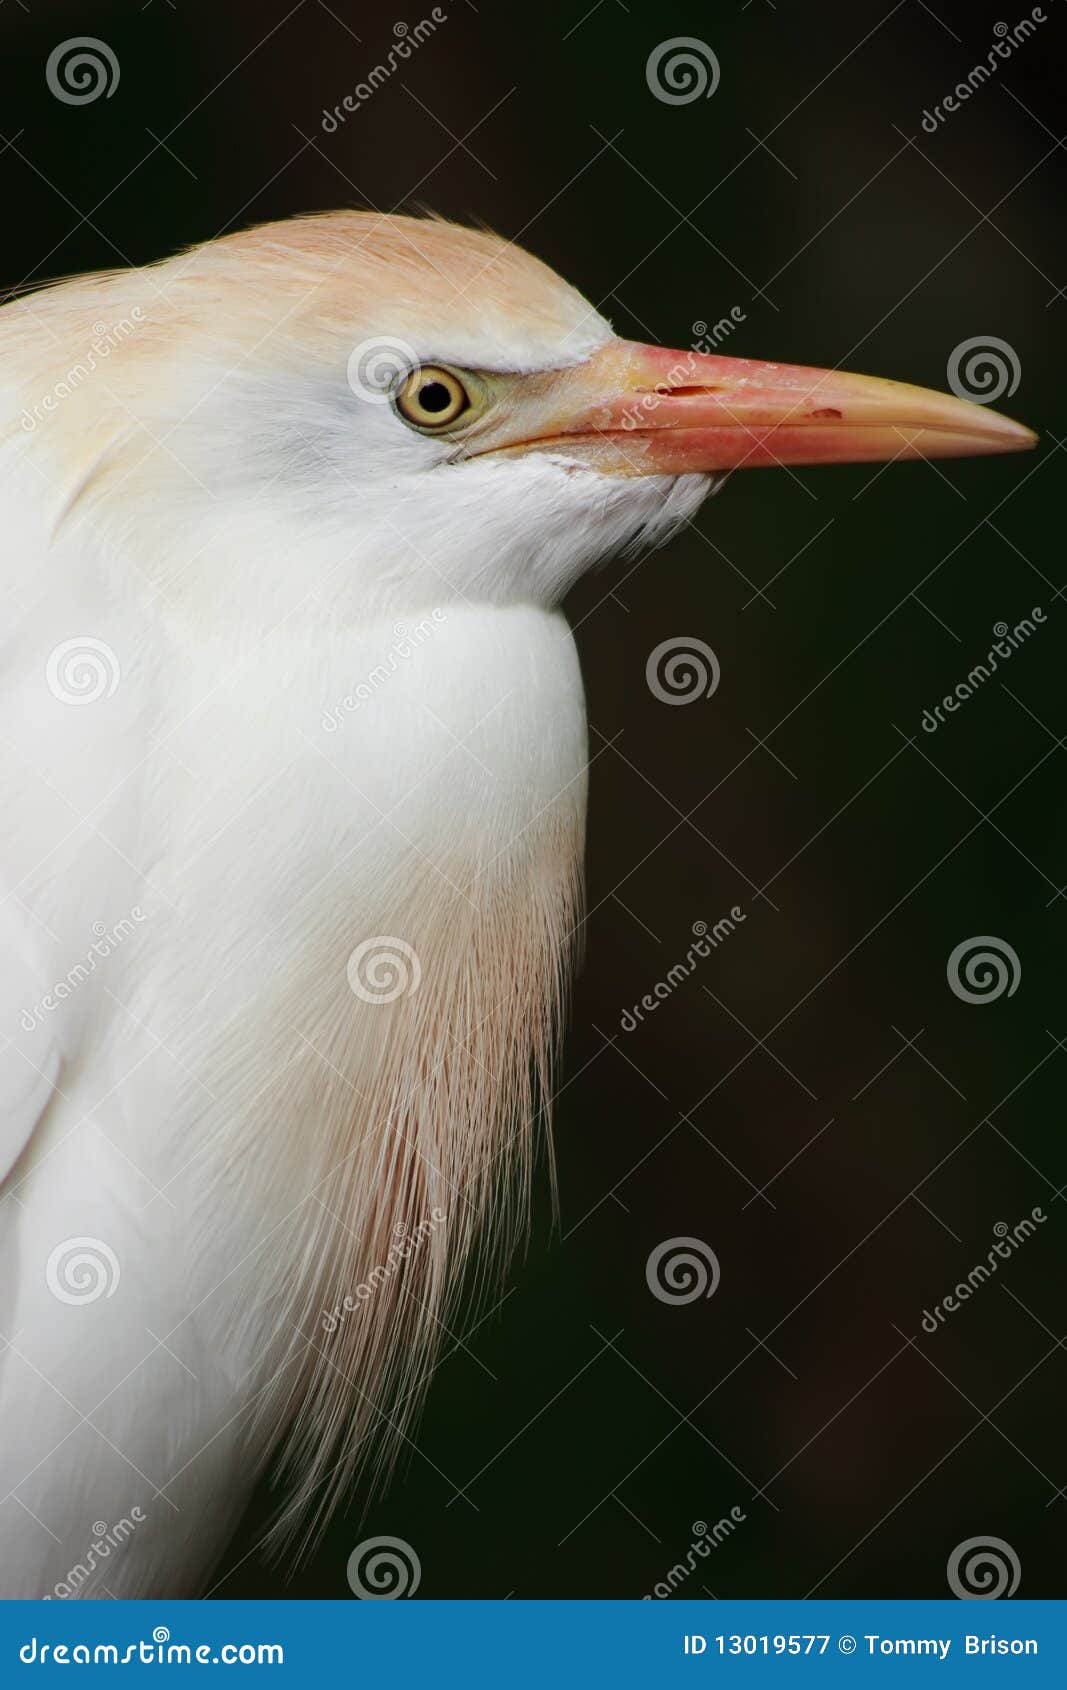 cattle egret portrait